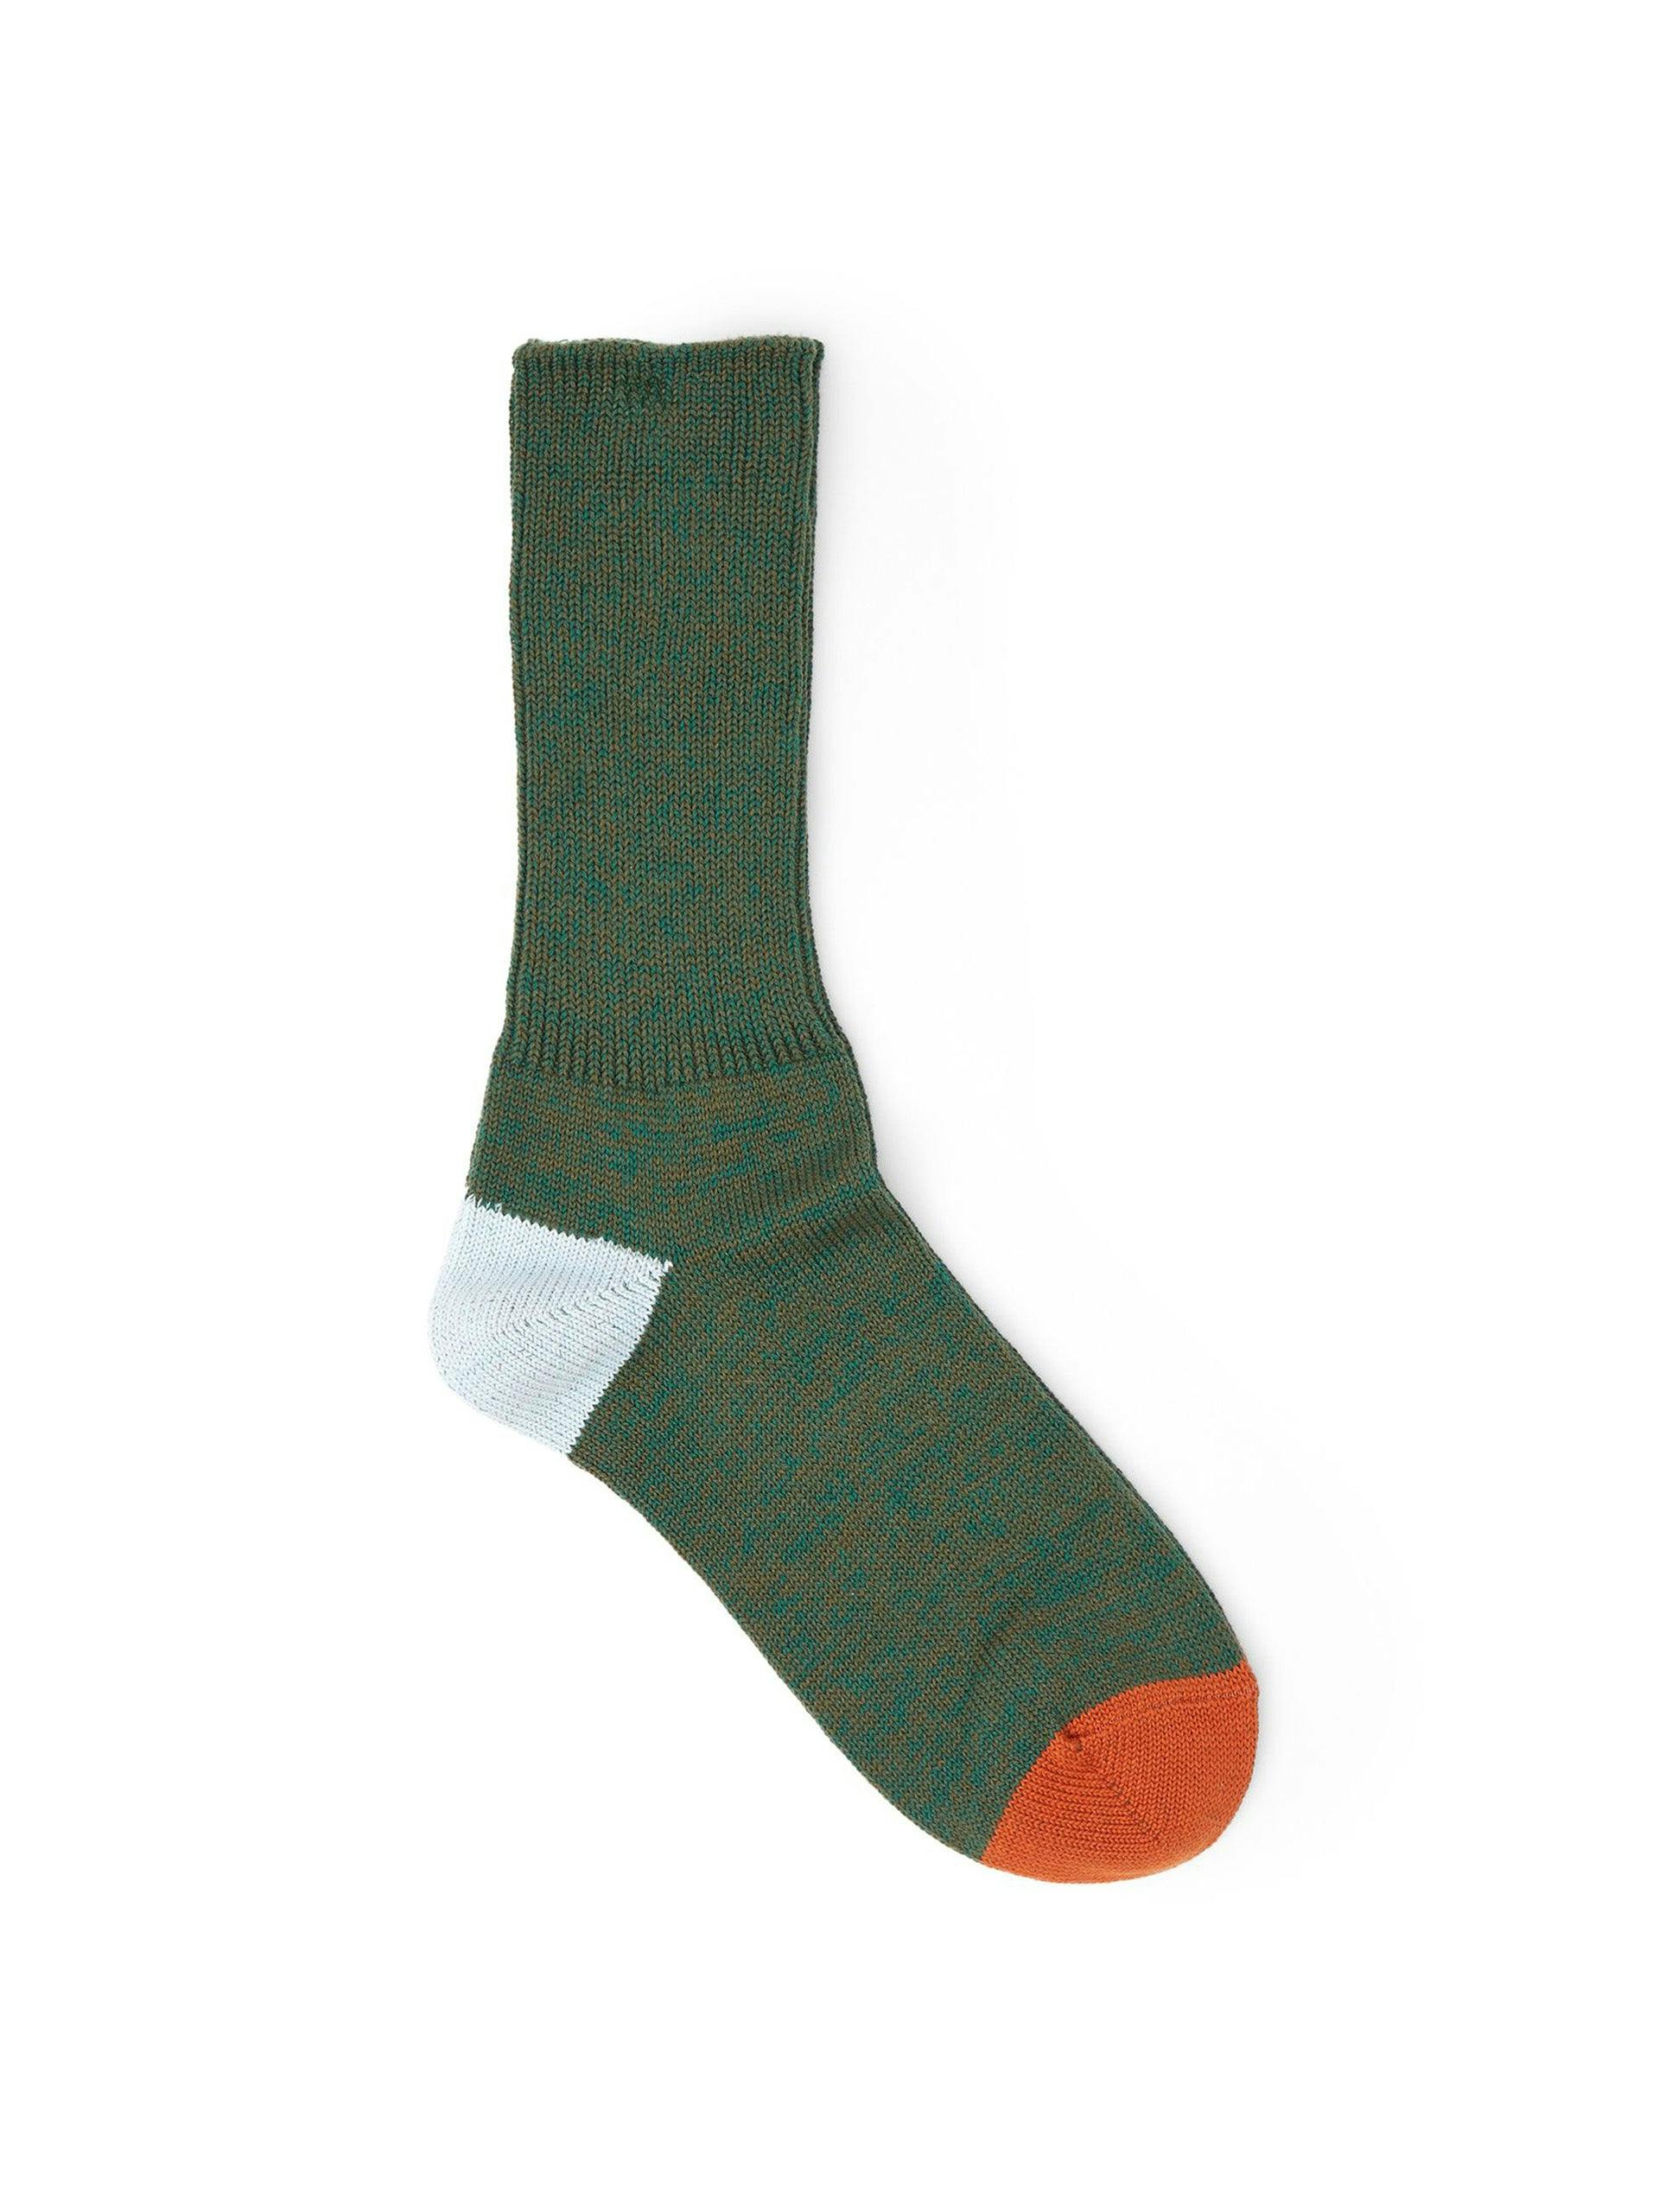 Exclusive 2 Point socks in Seaweed, Sky & Orange Rust